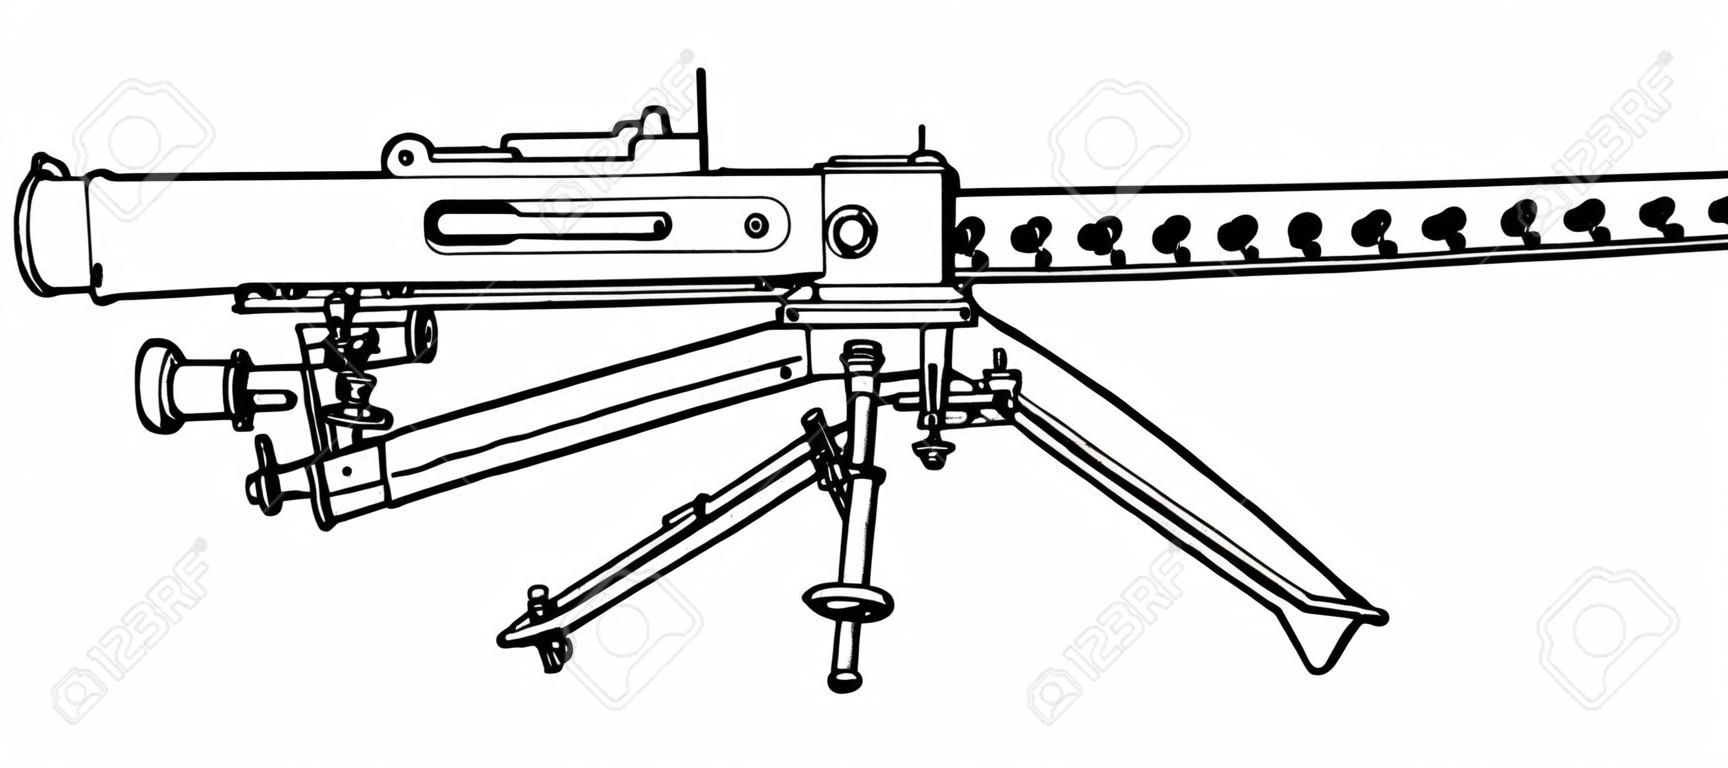 La ametralladora Browning se utilizó como infantería ligera, dibujo de línea vintage o ilustración de grabado.